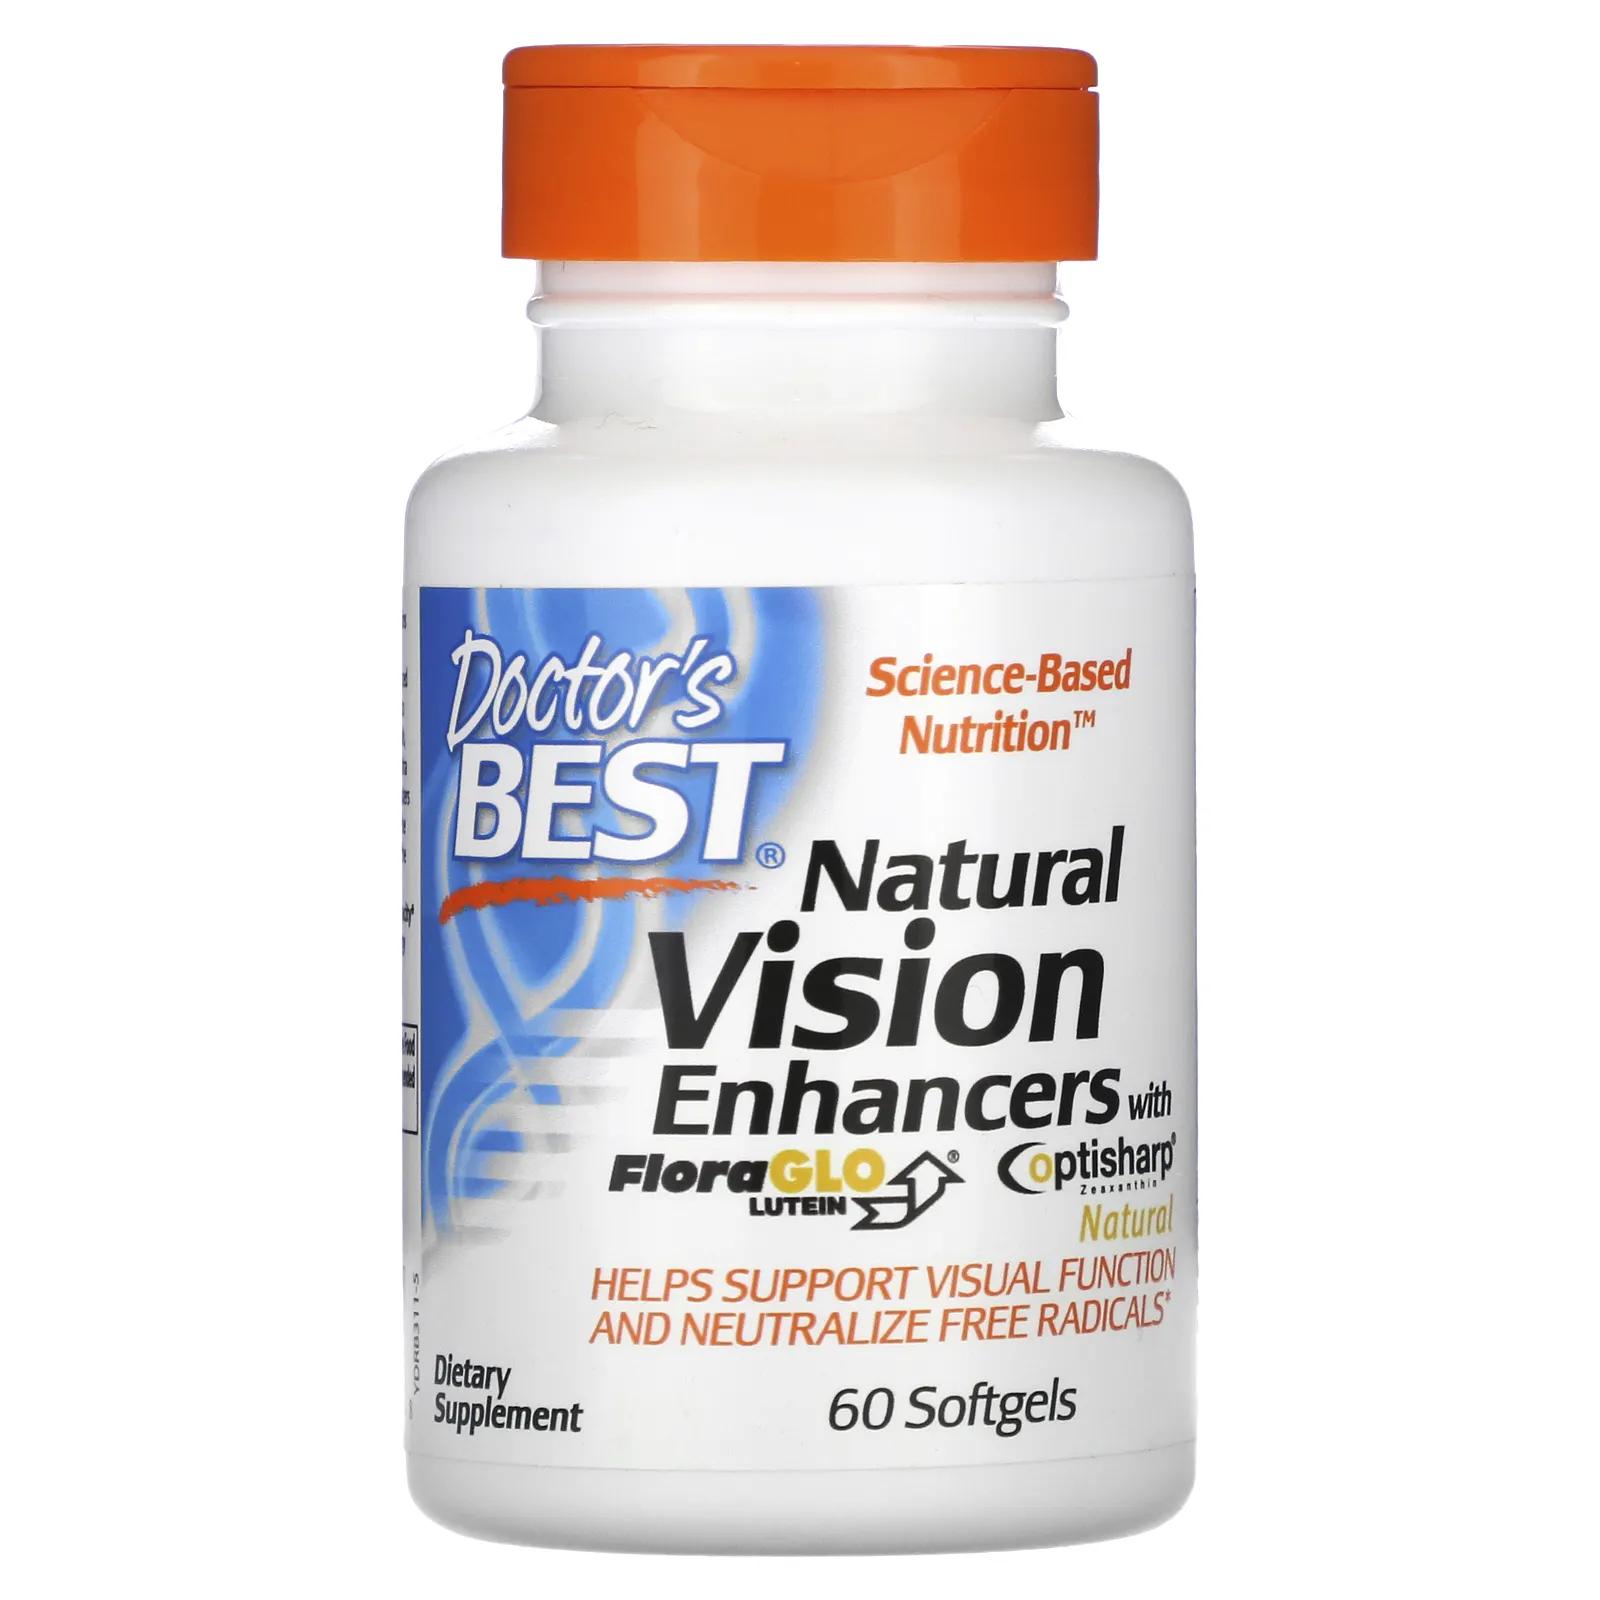 Doctor's Best Натуральное средство для улучшения зрения с лютеином FloraGlo 60 мягких таблеток натуральные усилители зрения с lutemax 2020 60 мягких таблеток doctor s best